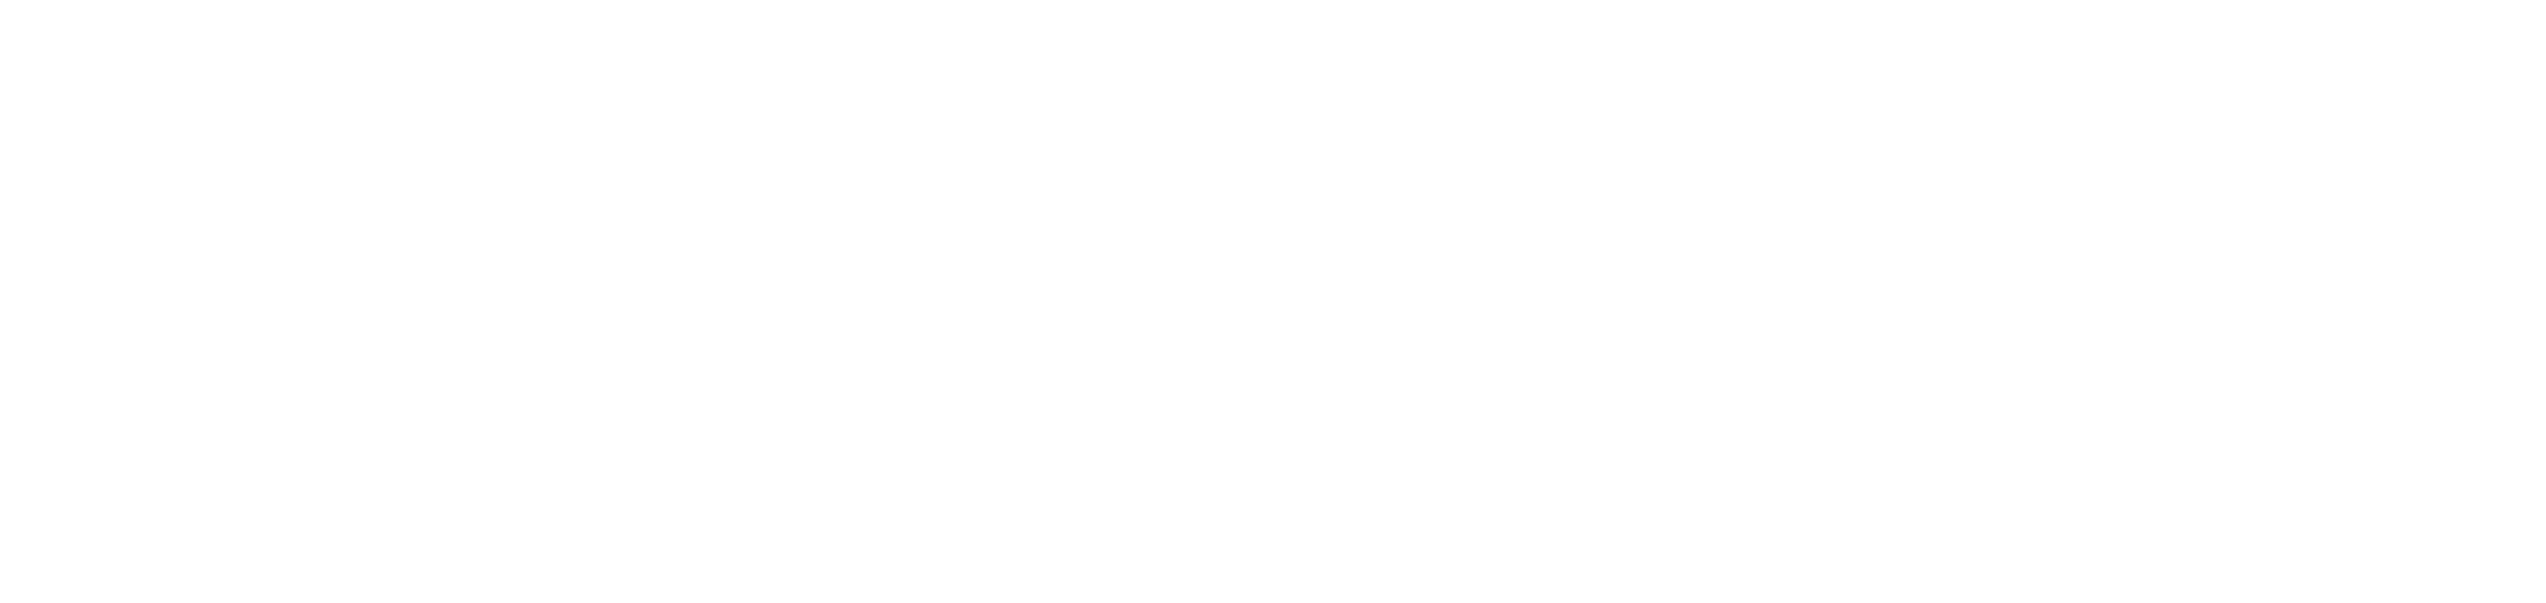 ZANZONE E-SPORT CLUB 葩葩网咖 Logo